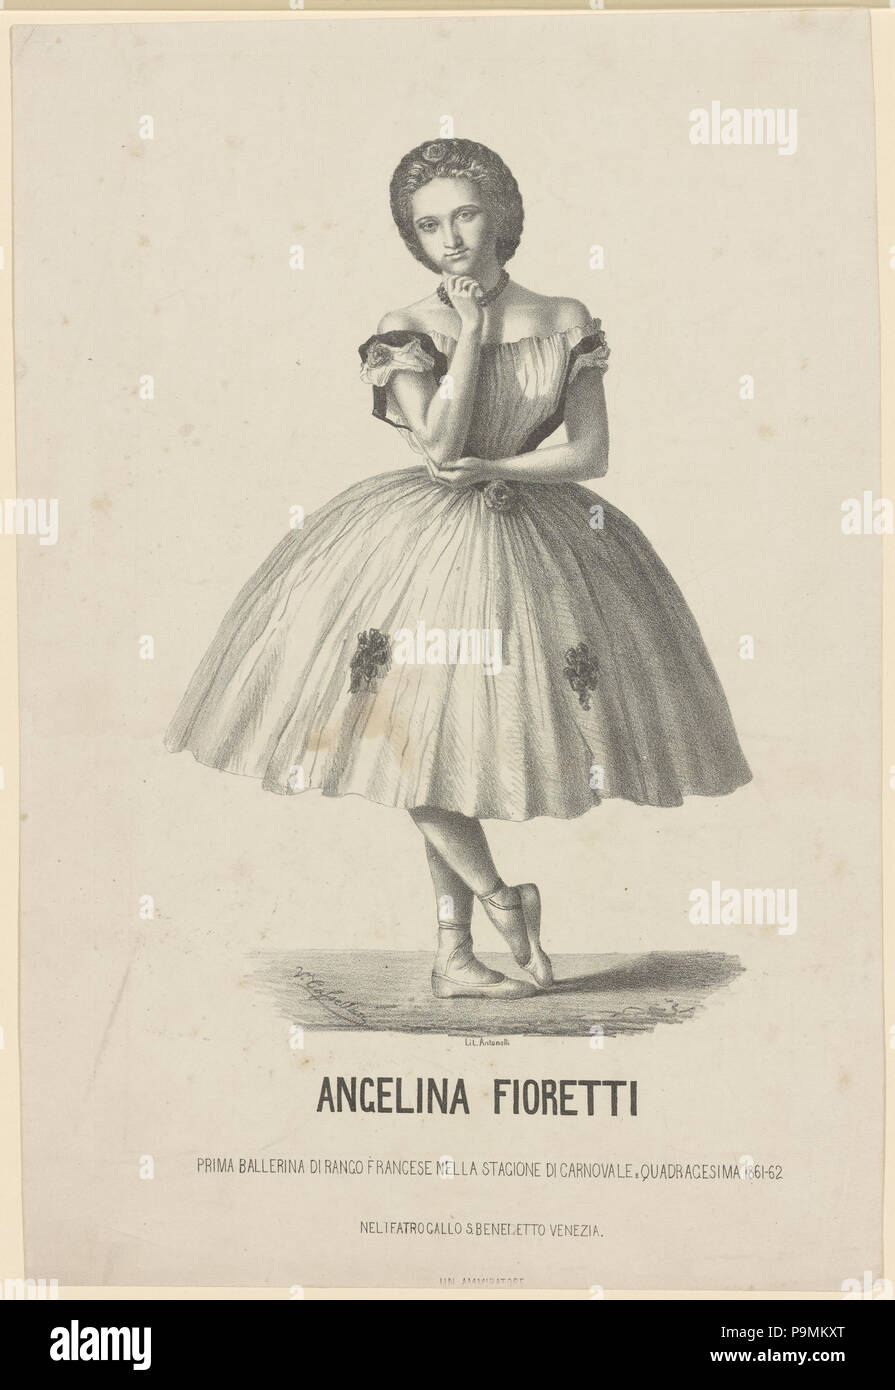 131 Angelina Fioretti, prima ballerina di rango francese nella stagione di carnovale e quadragesima 1861-62 nel Teatro Gallo S. Benedetto, Venezia (NYPL b12148321-5234930) Stock Photo